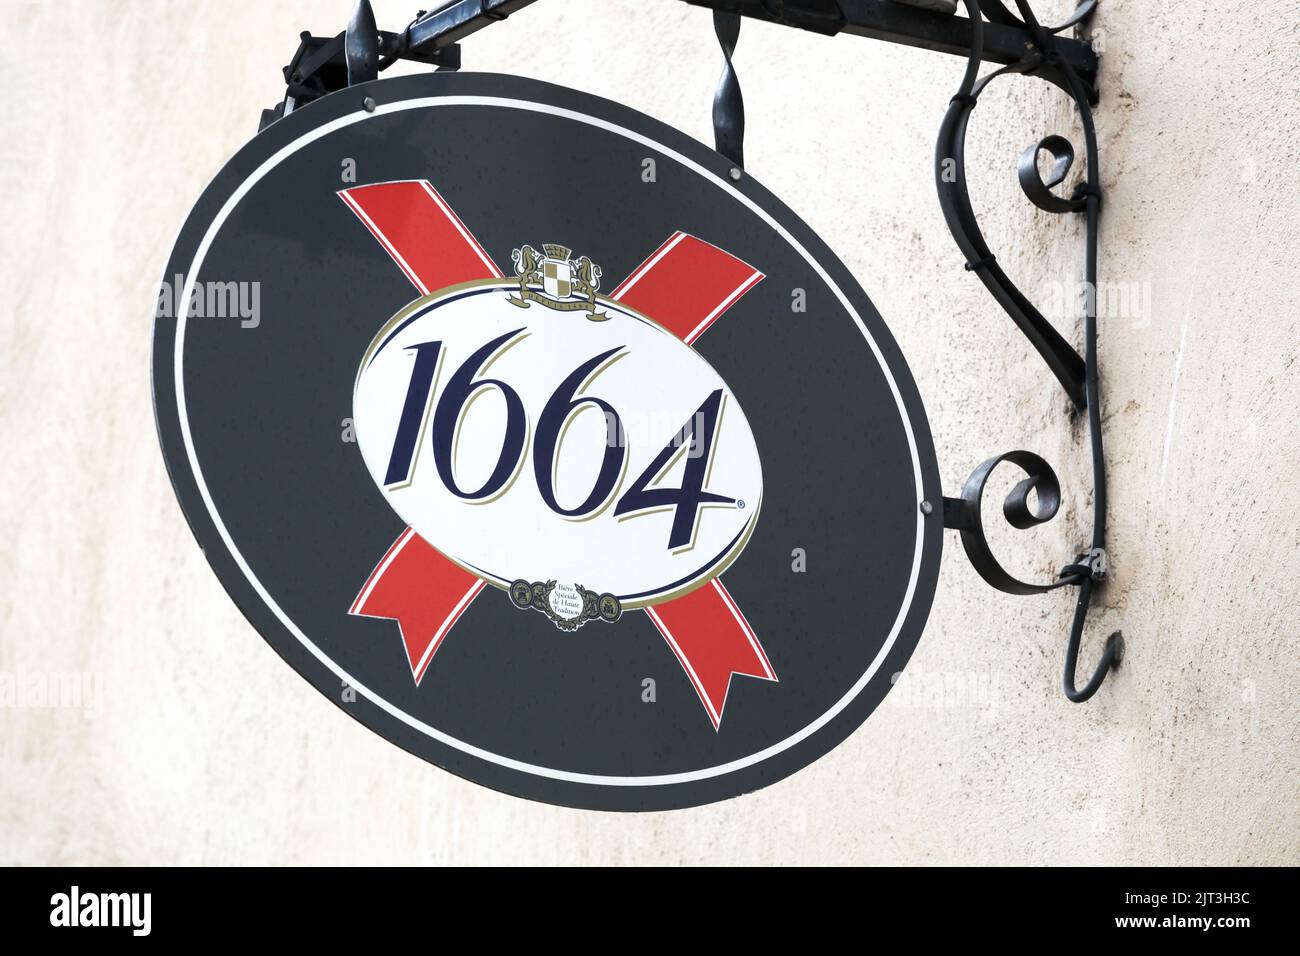 Anse, Francia - 11 de octubre de 2020: 1664 signo en una pared. 1664 es una marca de Kronenbourg , una cervecera alsaciana con sede en Obernai, Francia Foto de stock